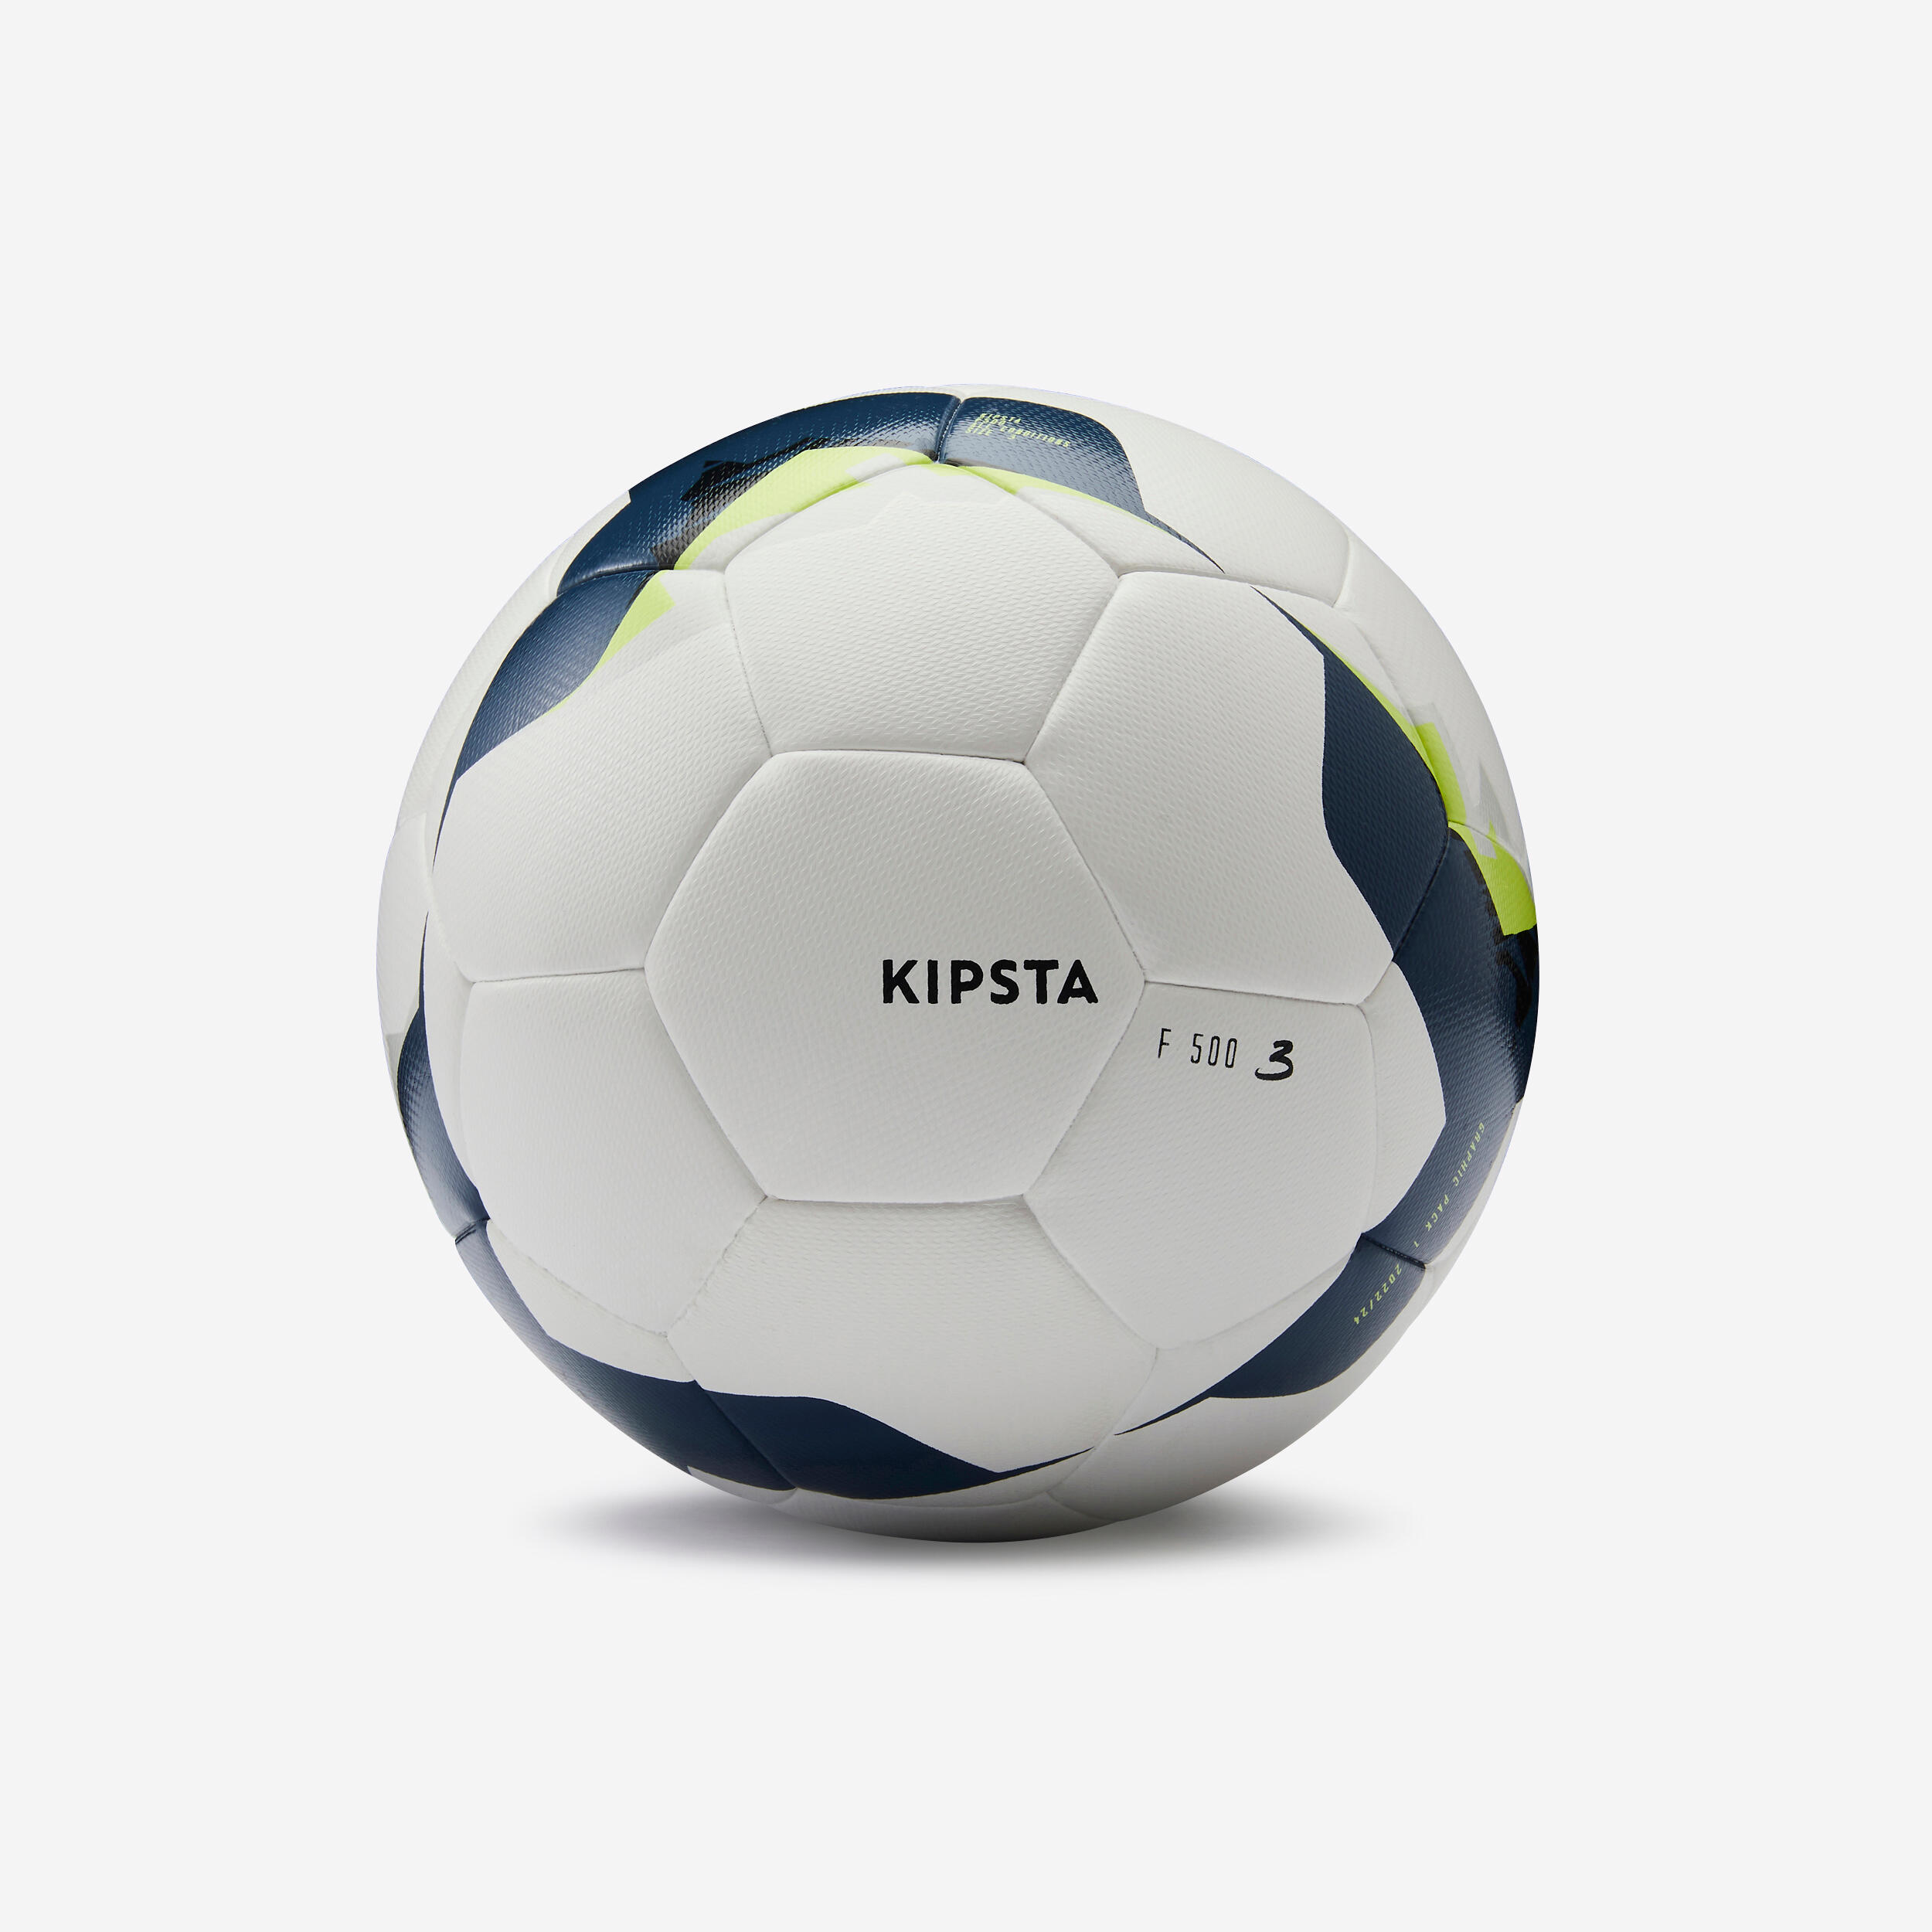 KIPSTA Hybrid Size 3 Football F500 - White/Yellow